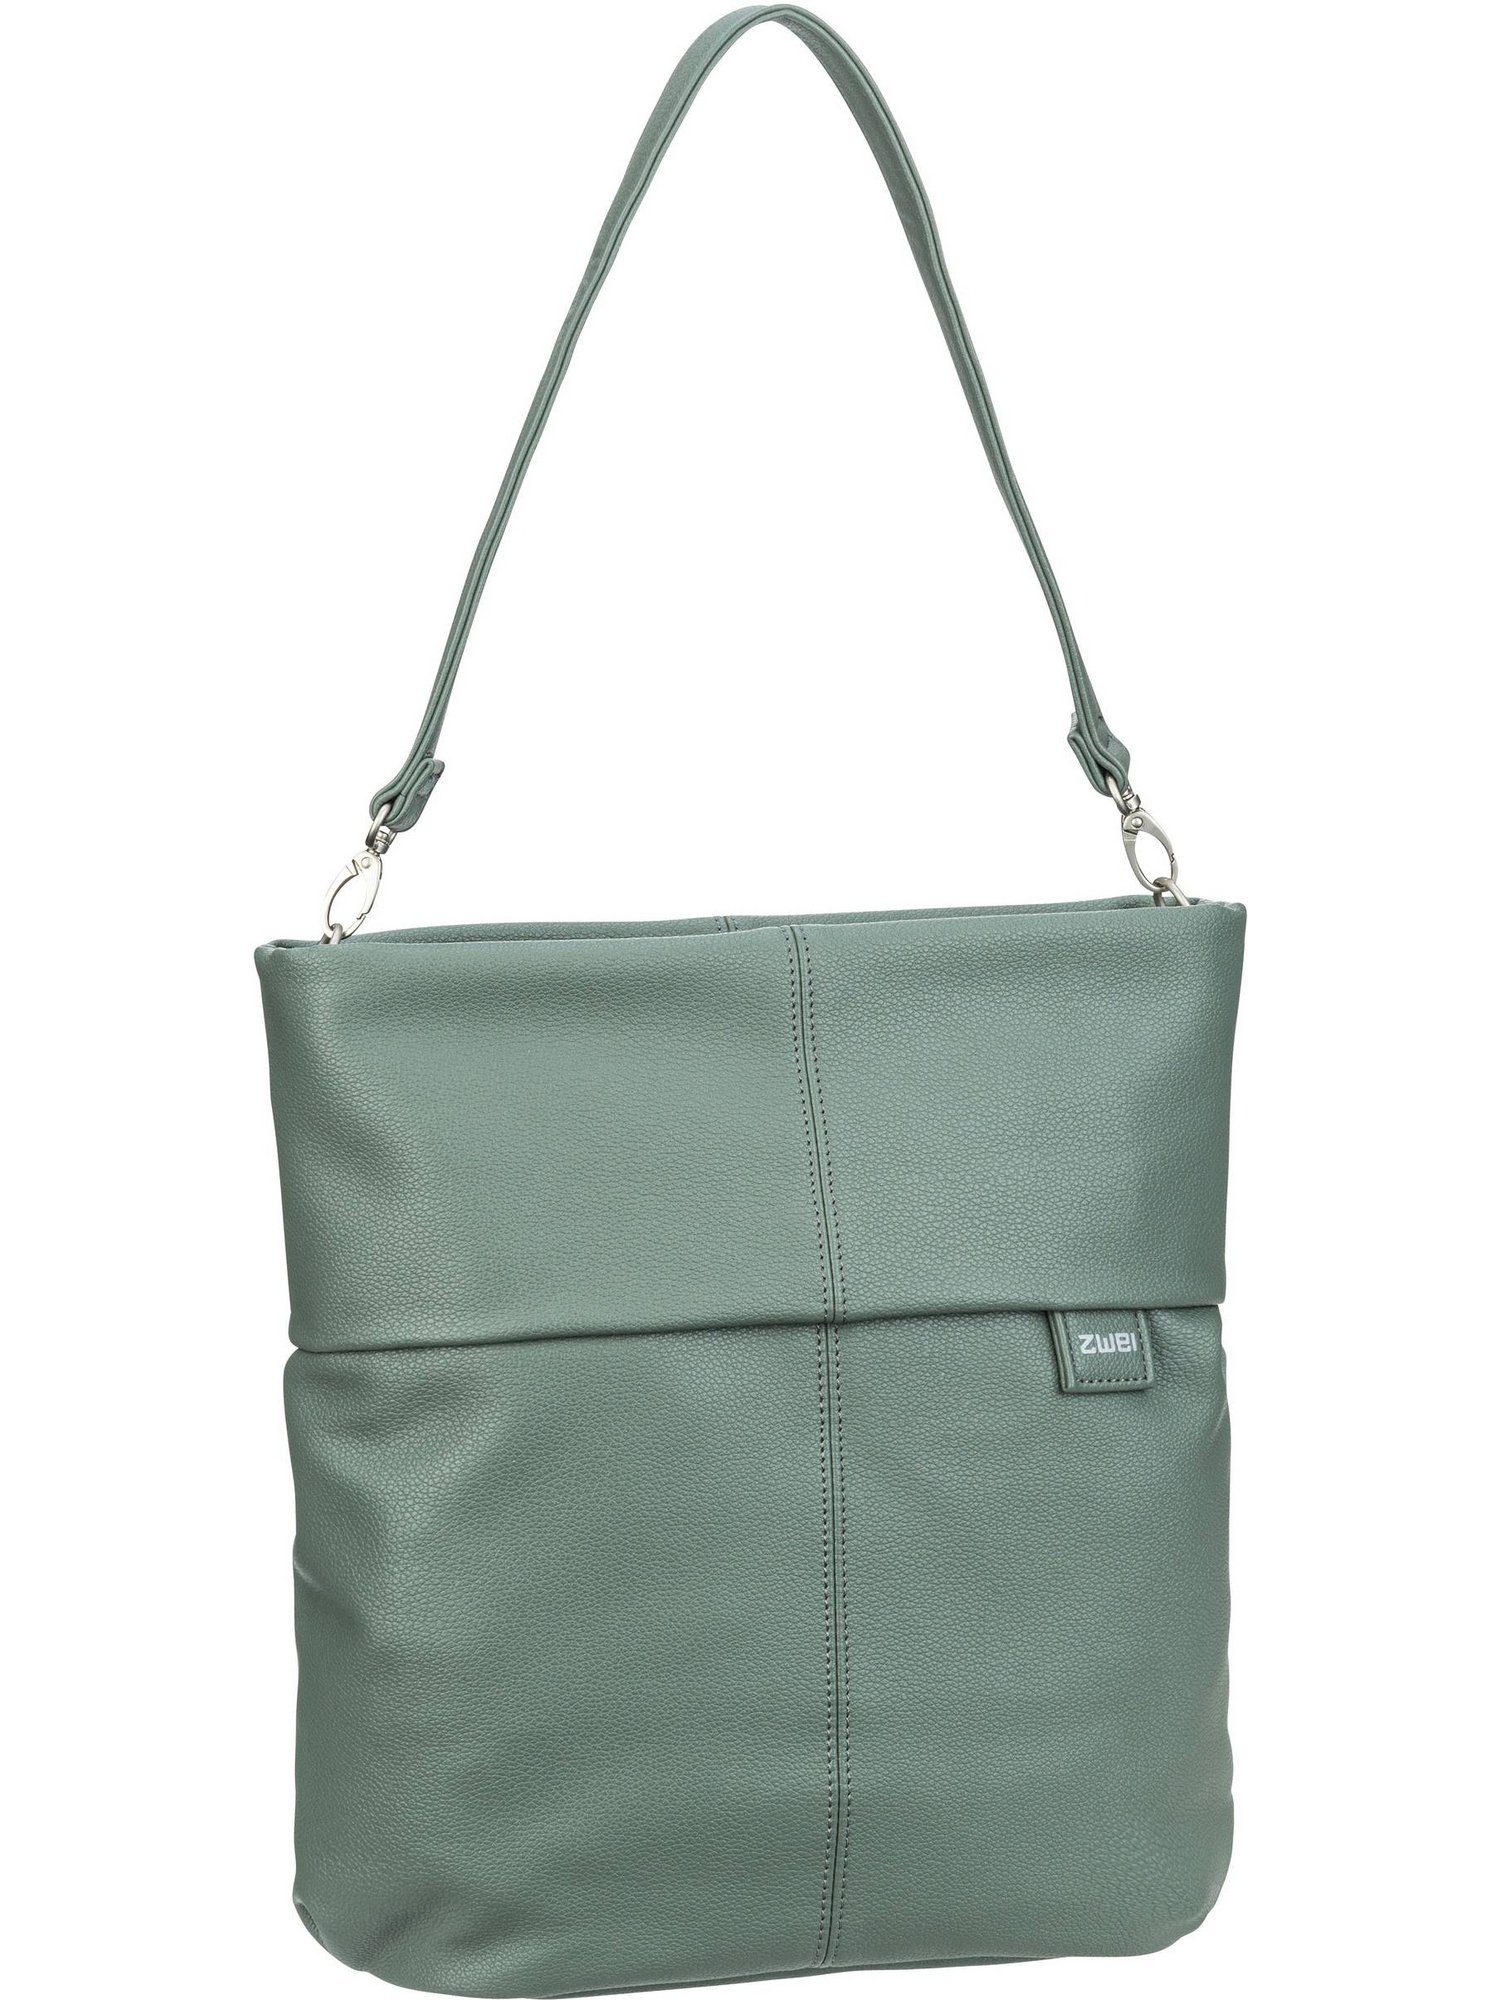 Zwei Handtasche Mademoiselle M12, Hobo Bag Eucalyptus